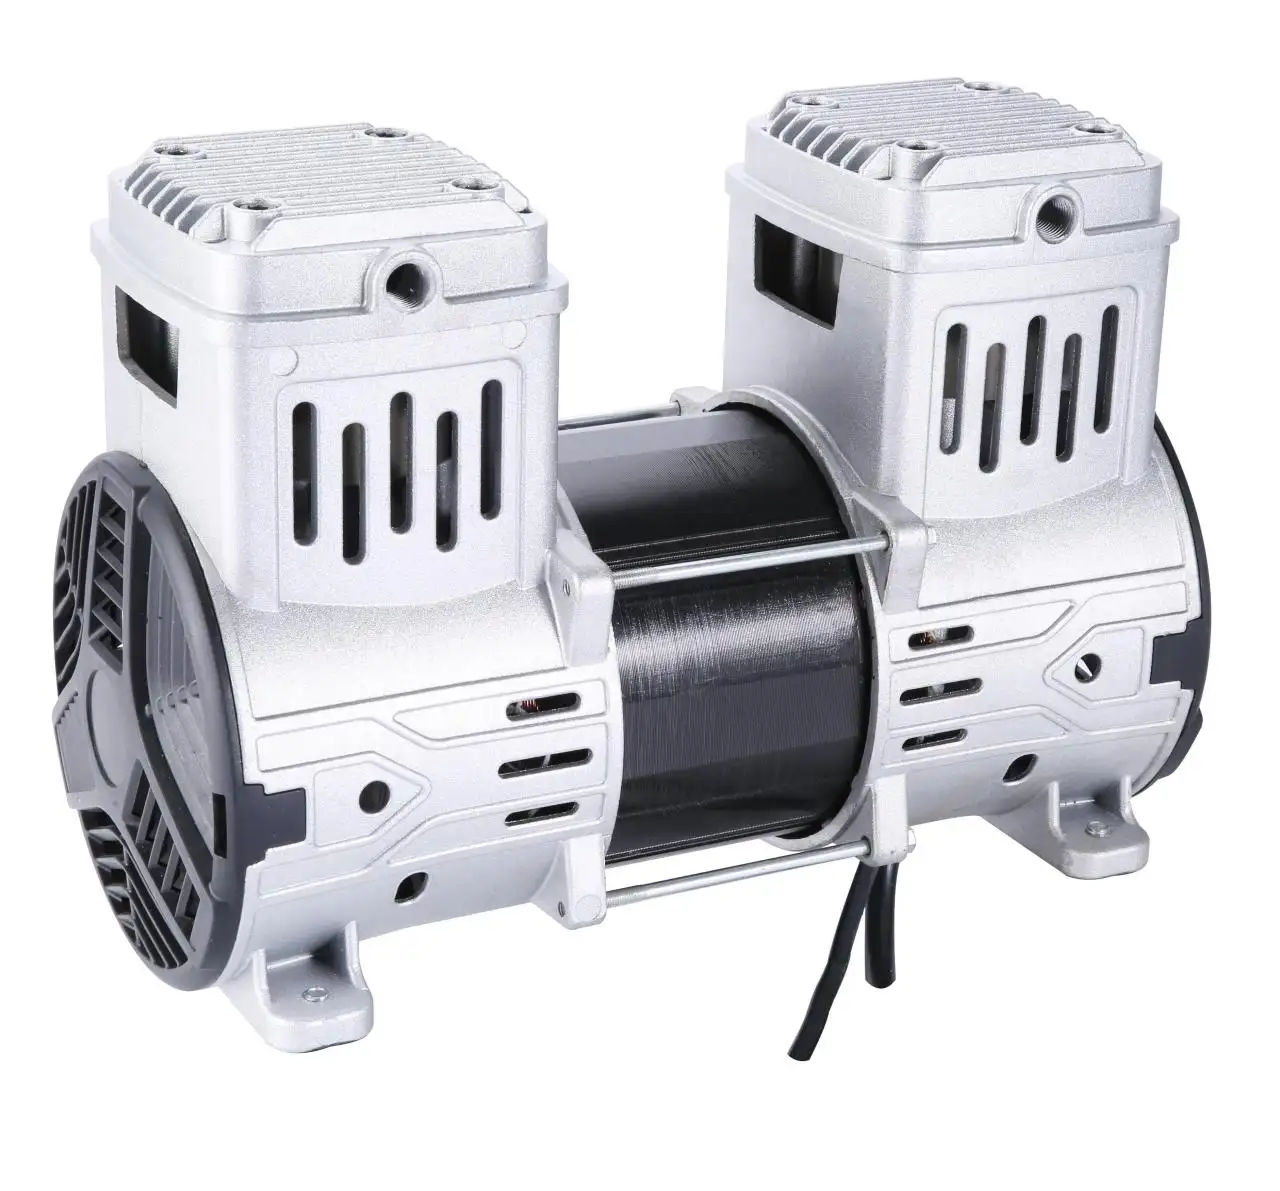 Yağsız hava pompası 4 kutuplu 220V/50HZ 1600W doğrudan fabrika en iyi fiyat yeni kullanılan hava kompresör pompası kafa